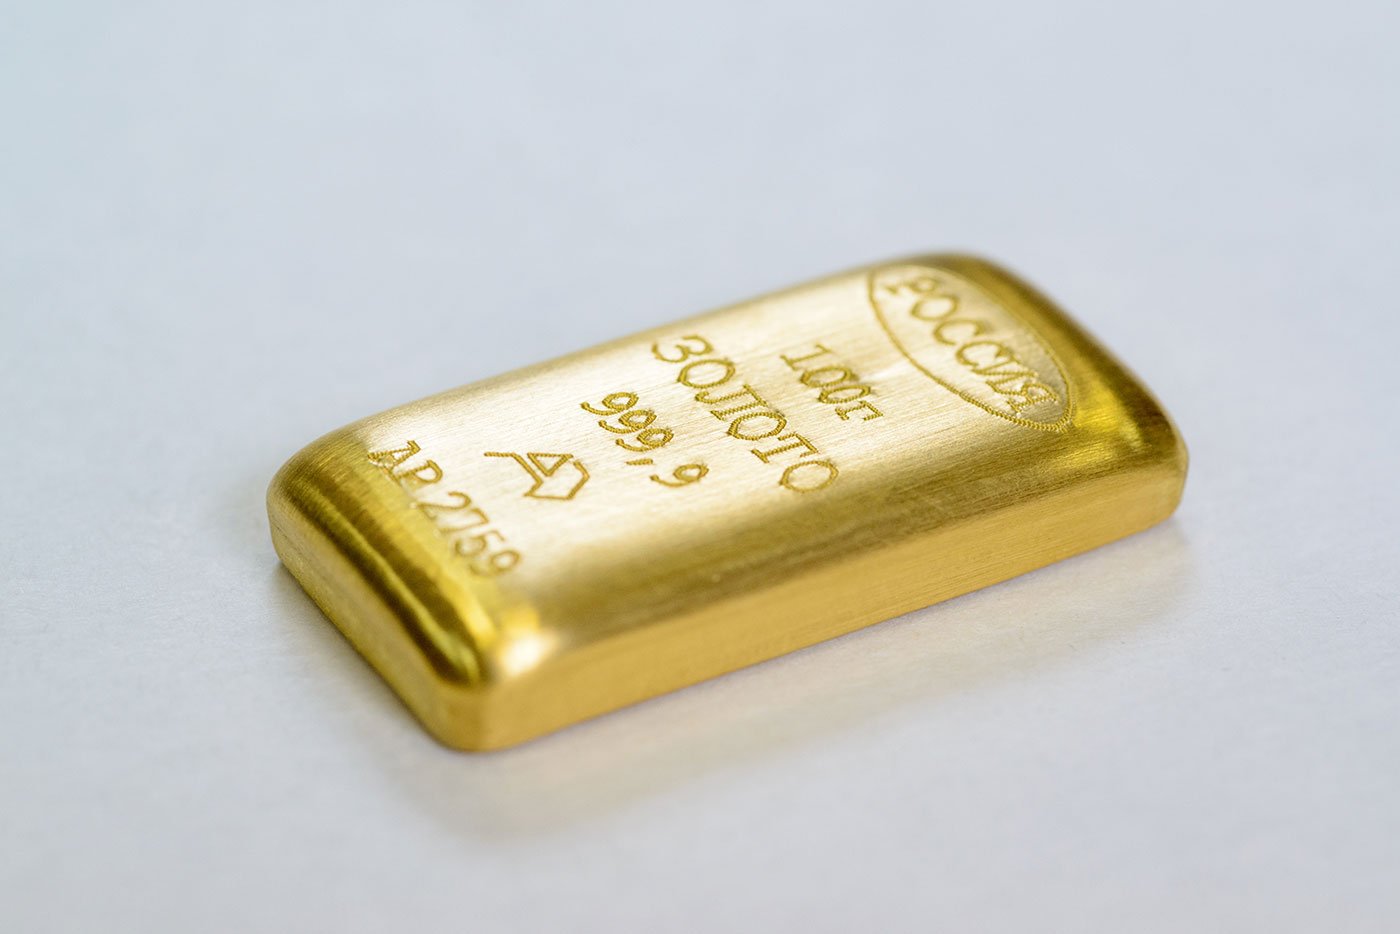 250 грамм золота. 100 Граммовый слиток золота. Слиток 20 гр золота. Золото слиток 10гр. 10 Граммовый слиток золота.